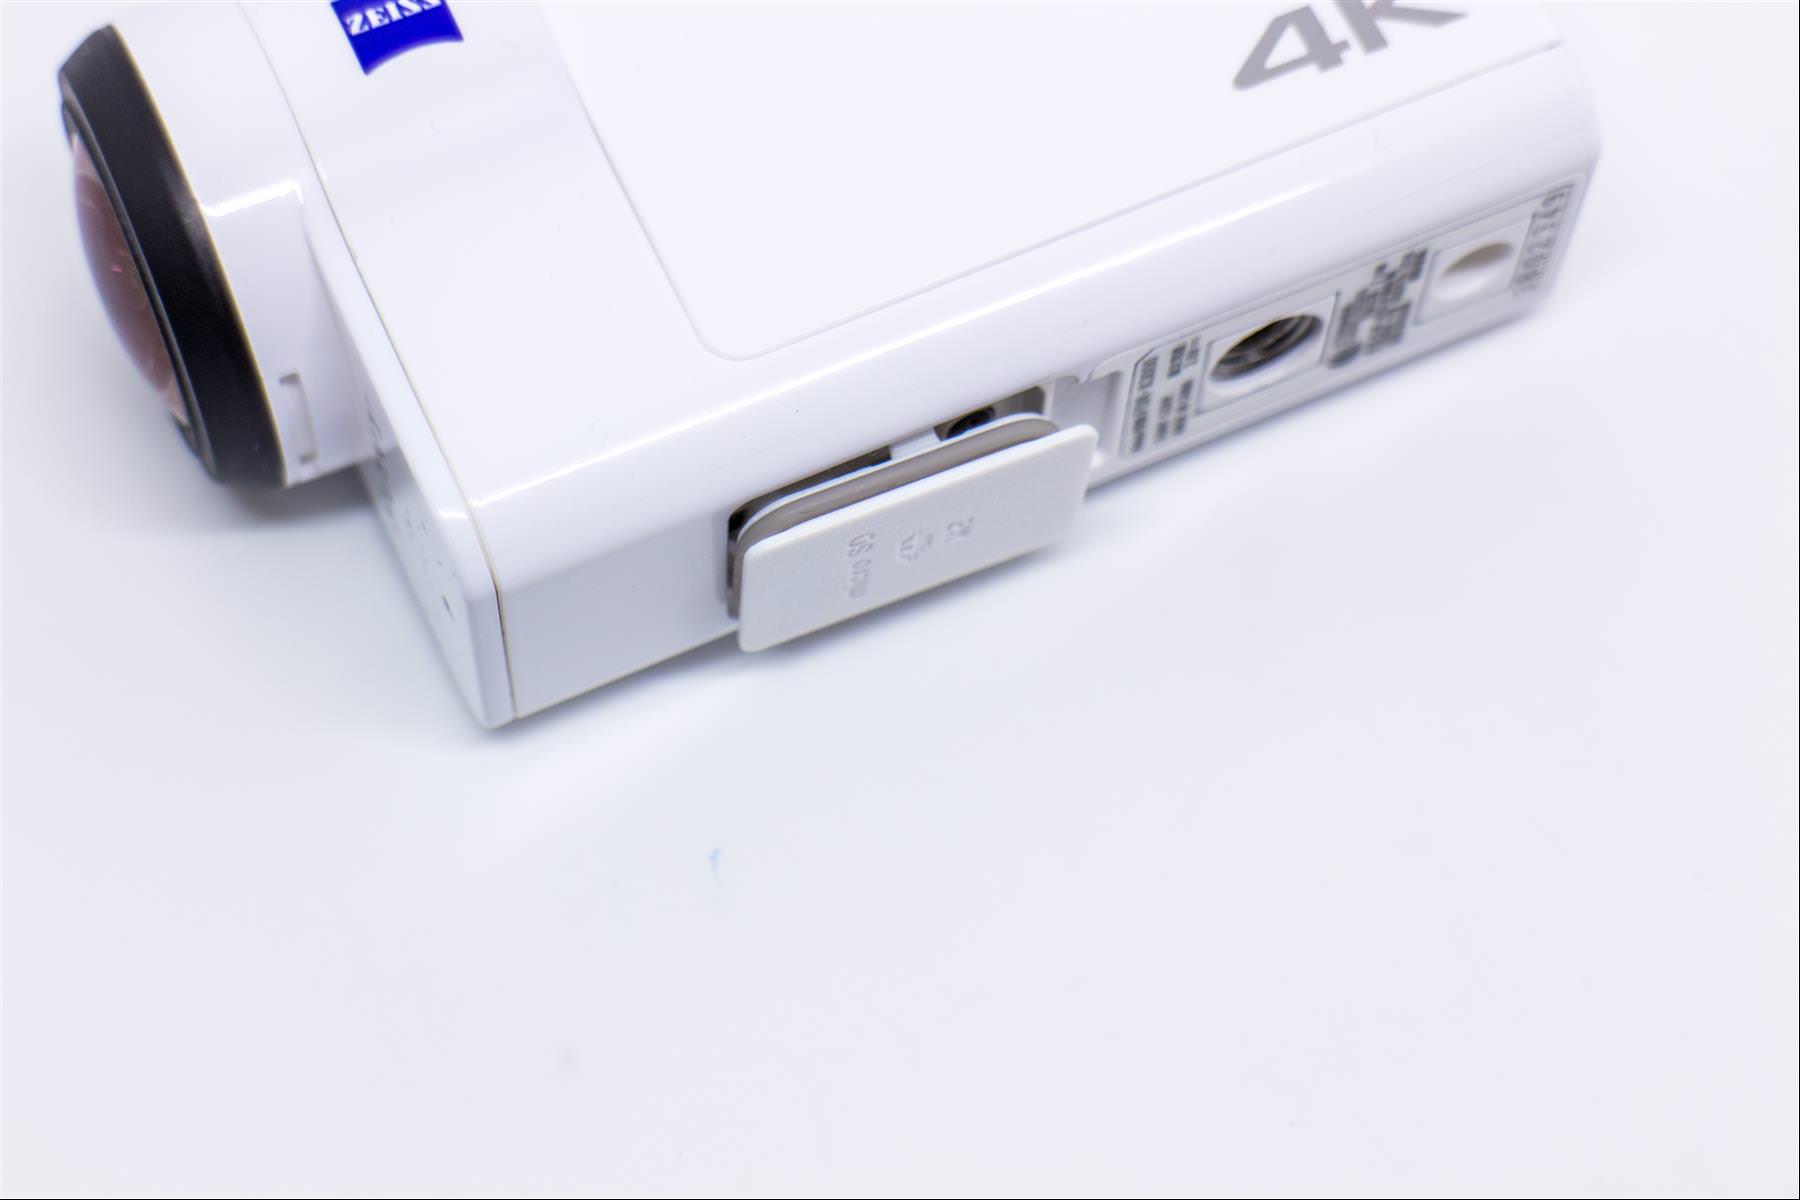 [比攝影73] Sony FDR-X3000 - 4K Action Cam 超強防手震 4K 運動攝影機介紹